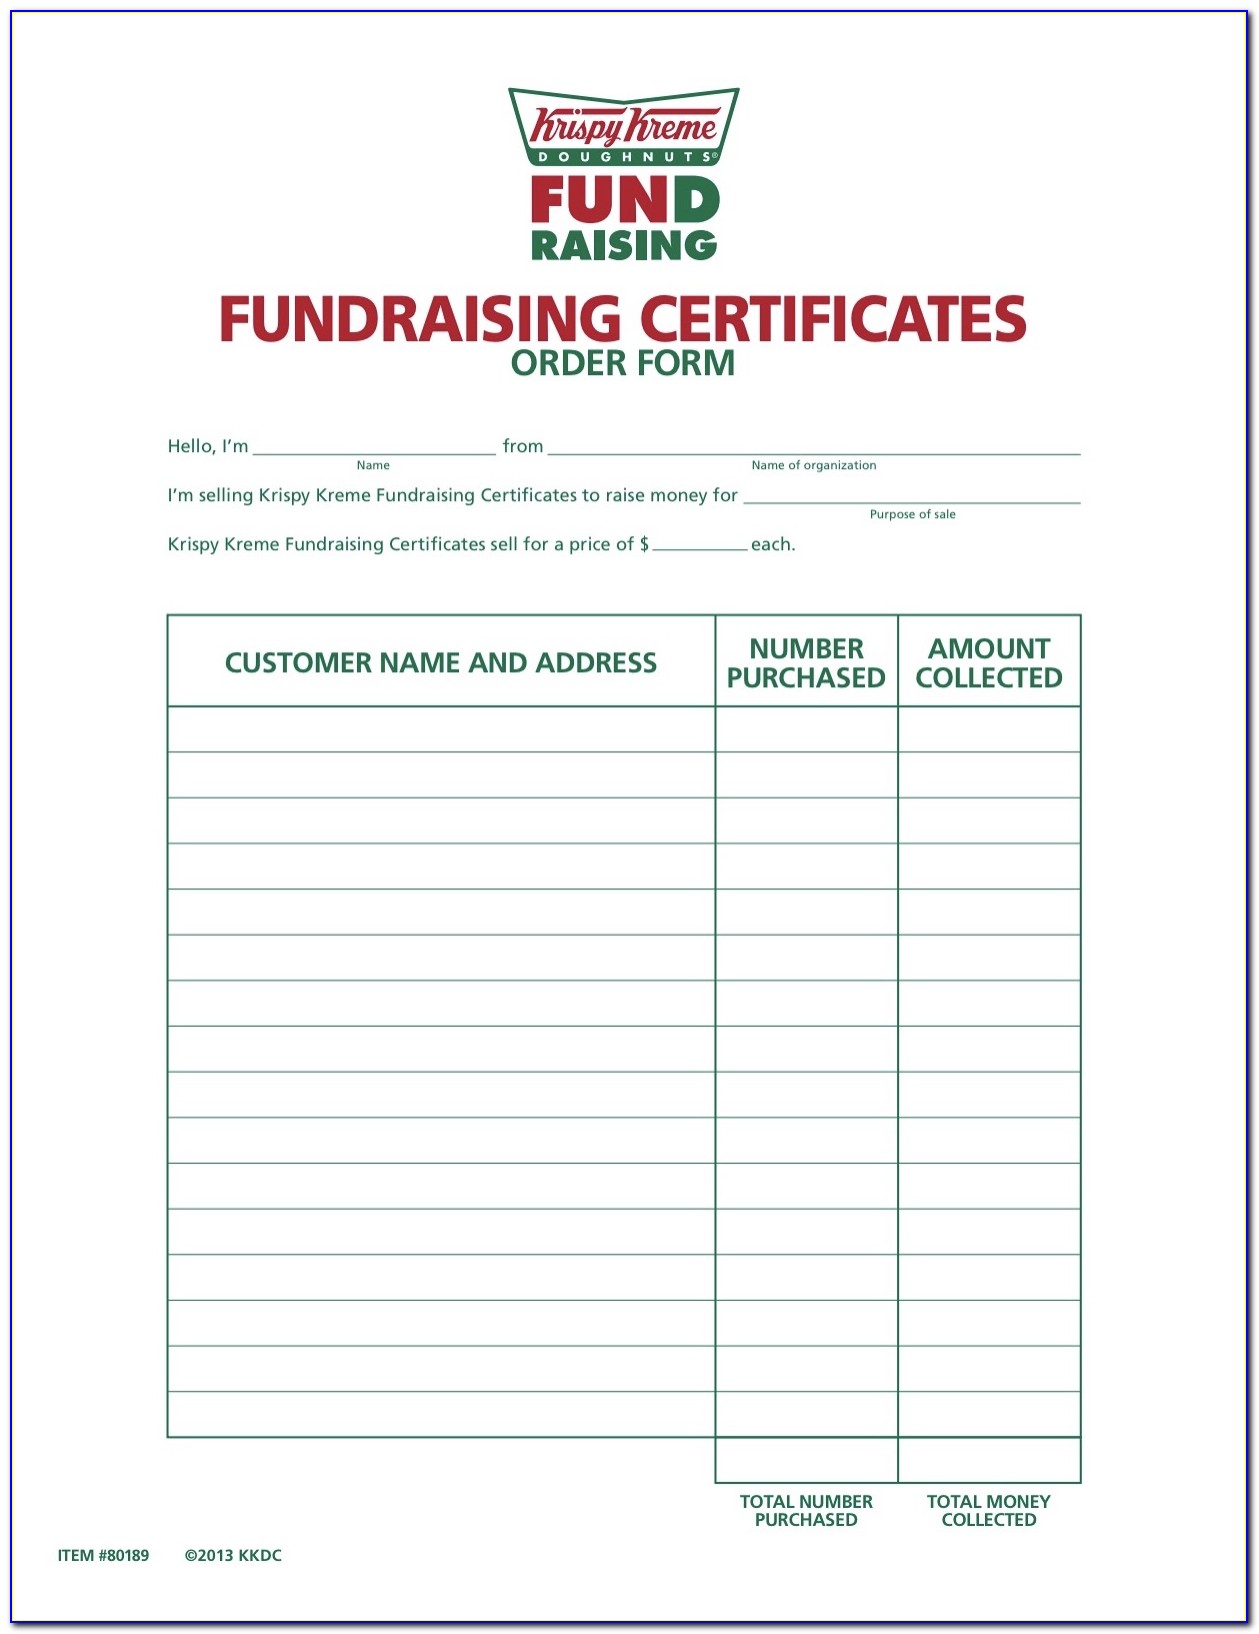 Krispy Kreme Certificate Fundraiser